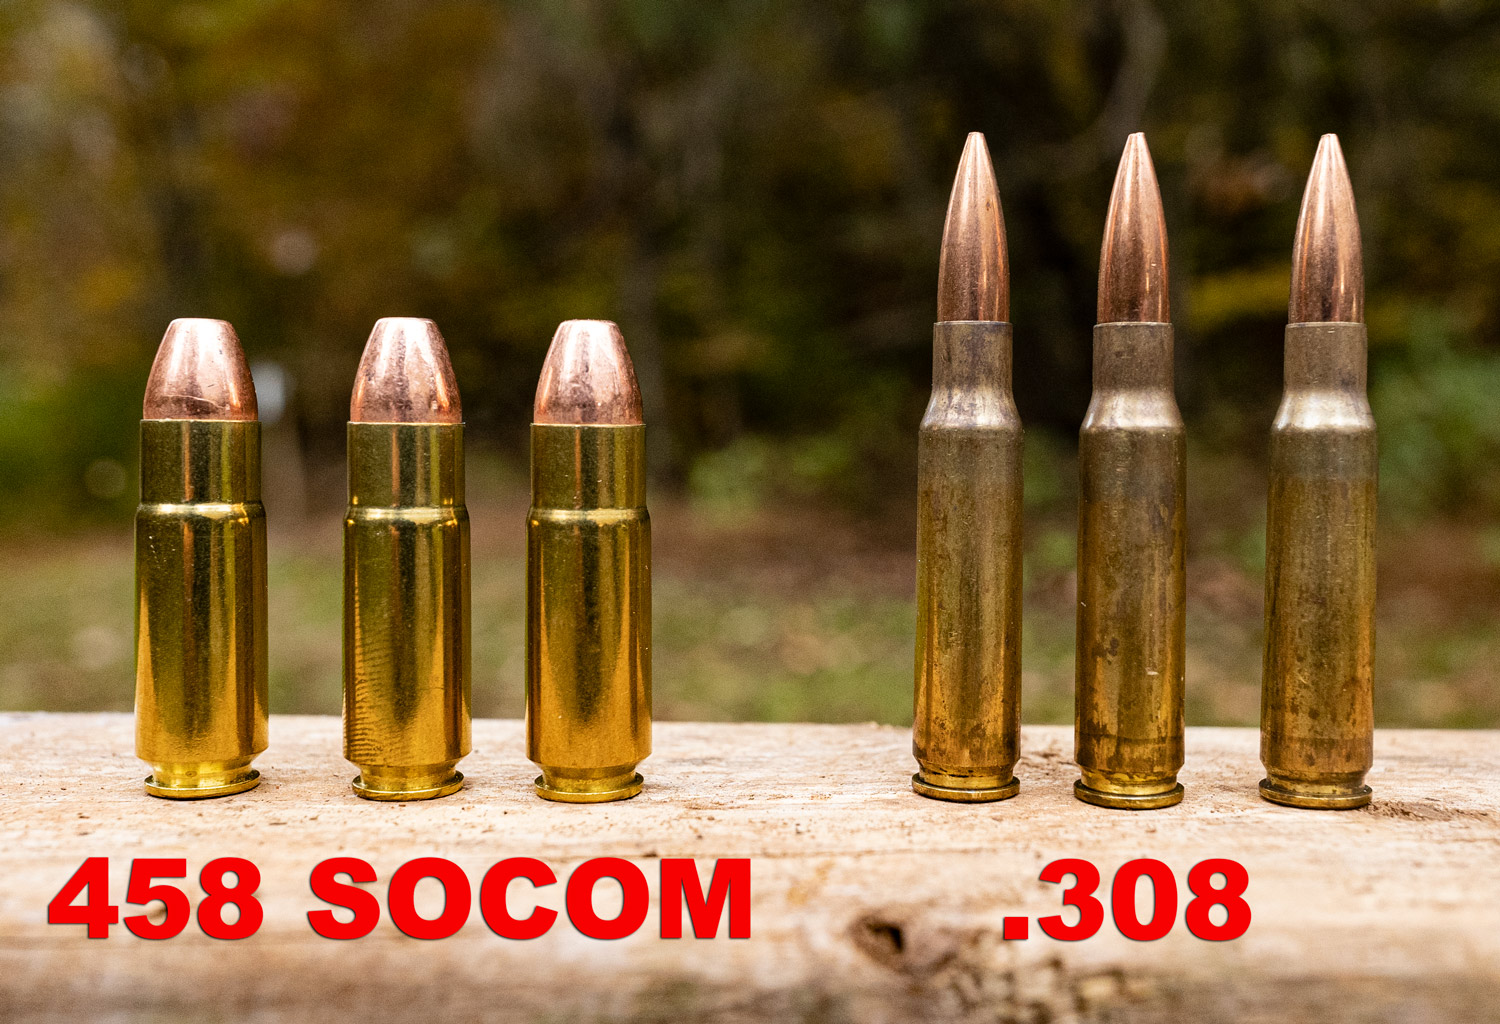 458 socom 600 grain ✔ 458 SOCOM - YouTube